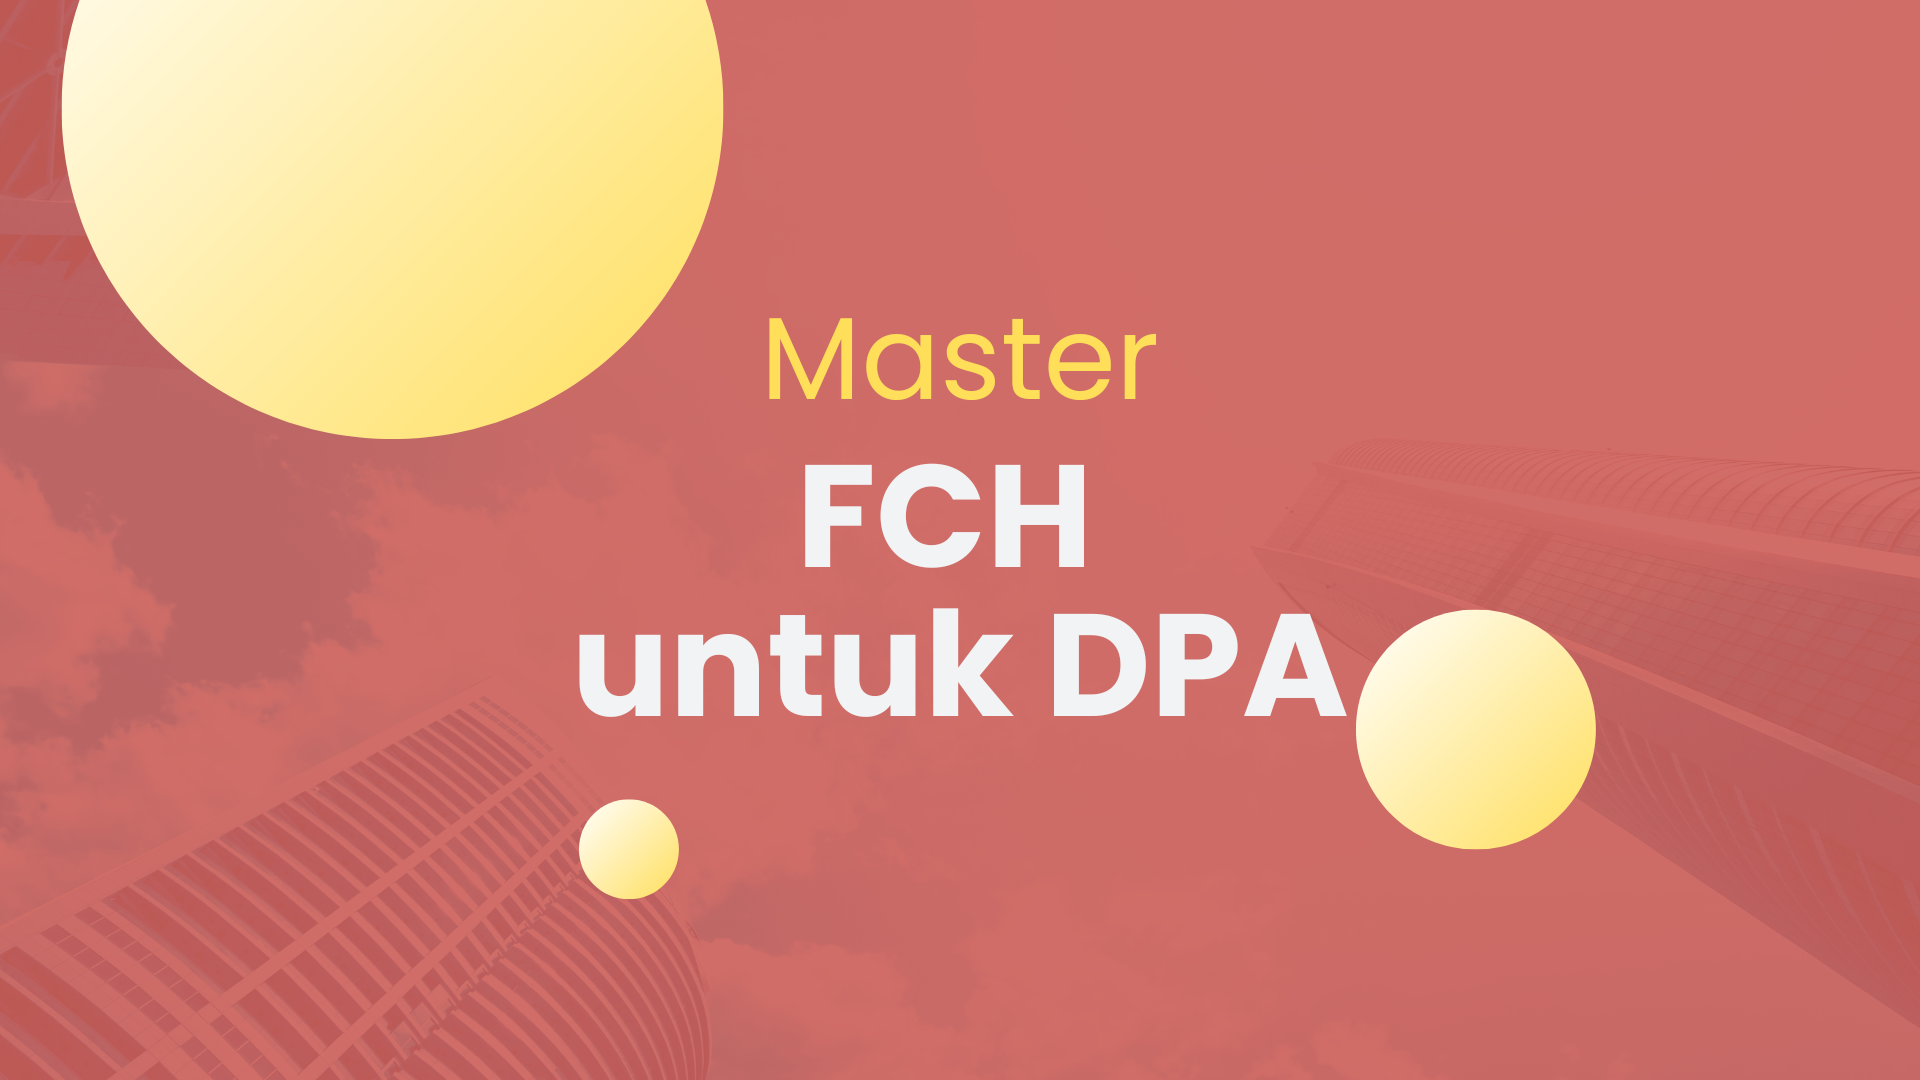 Master DPA FCH 2 II/2022-2023